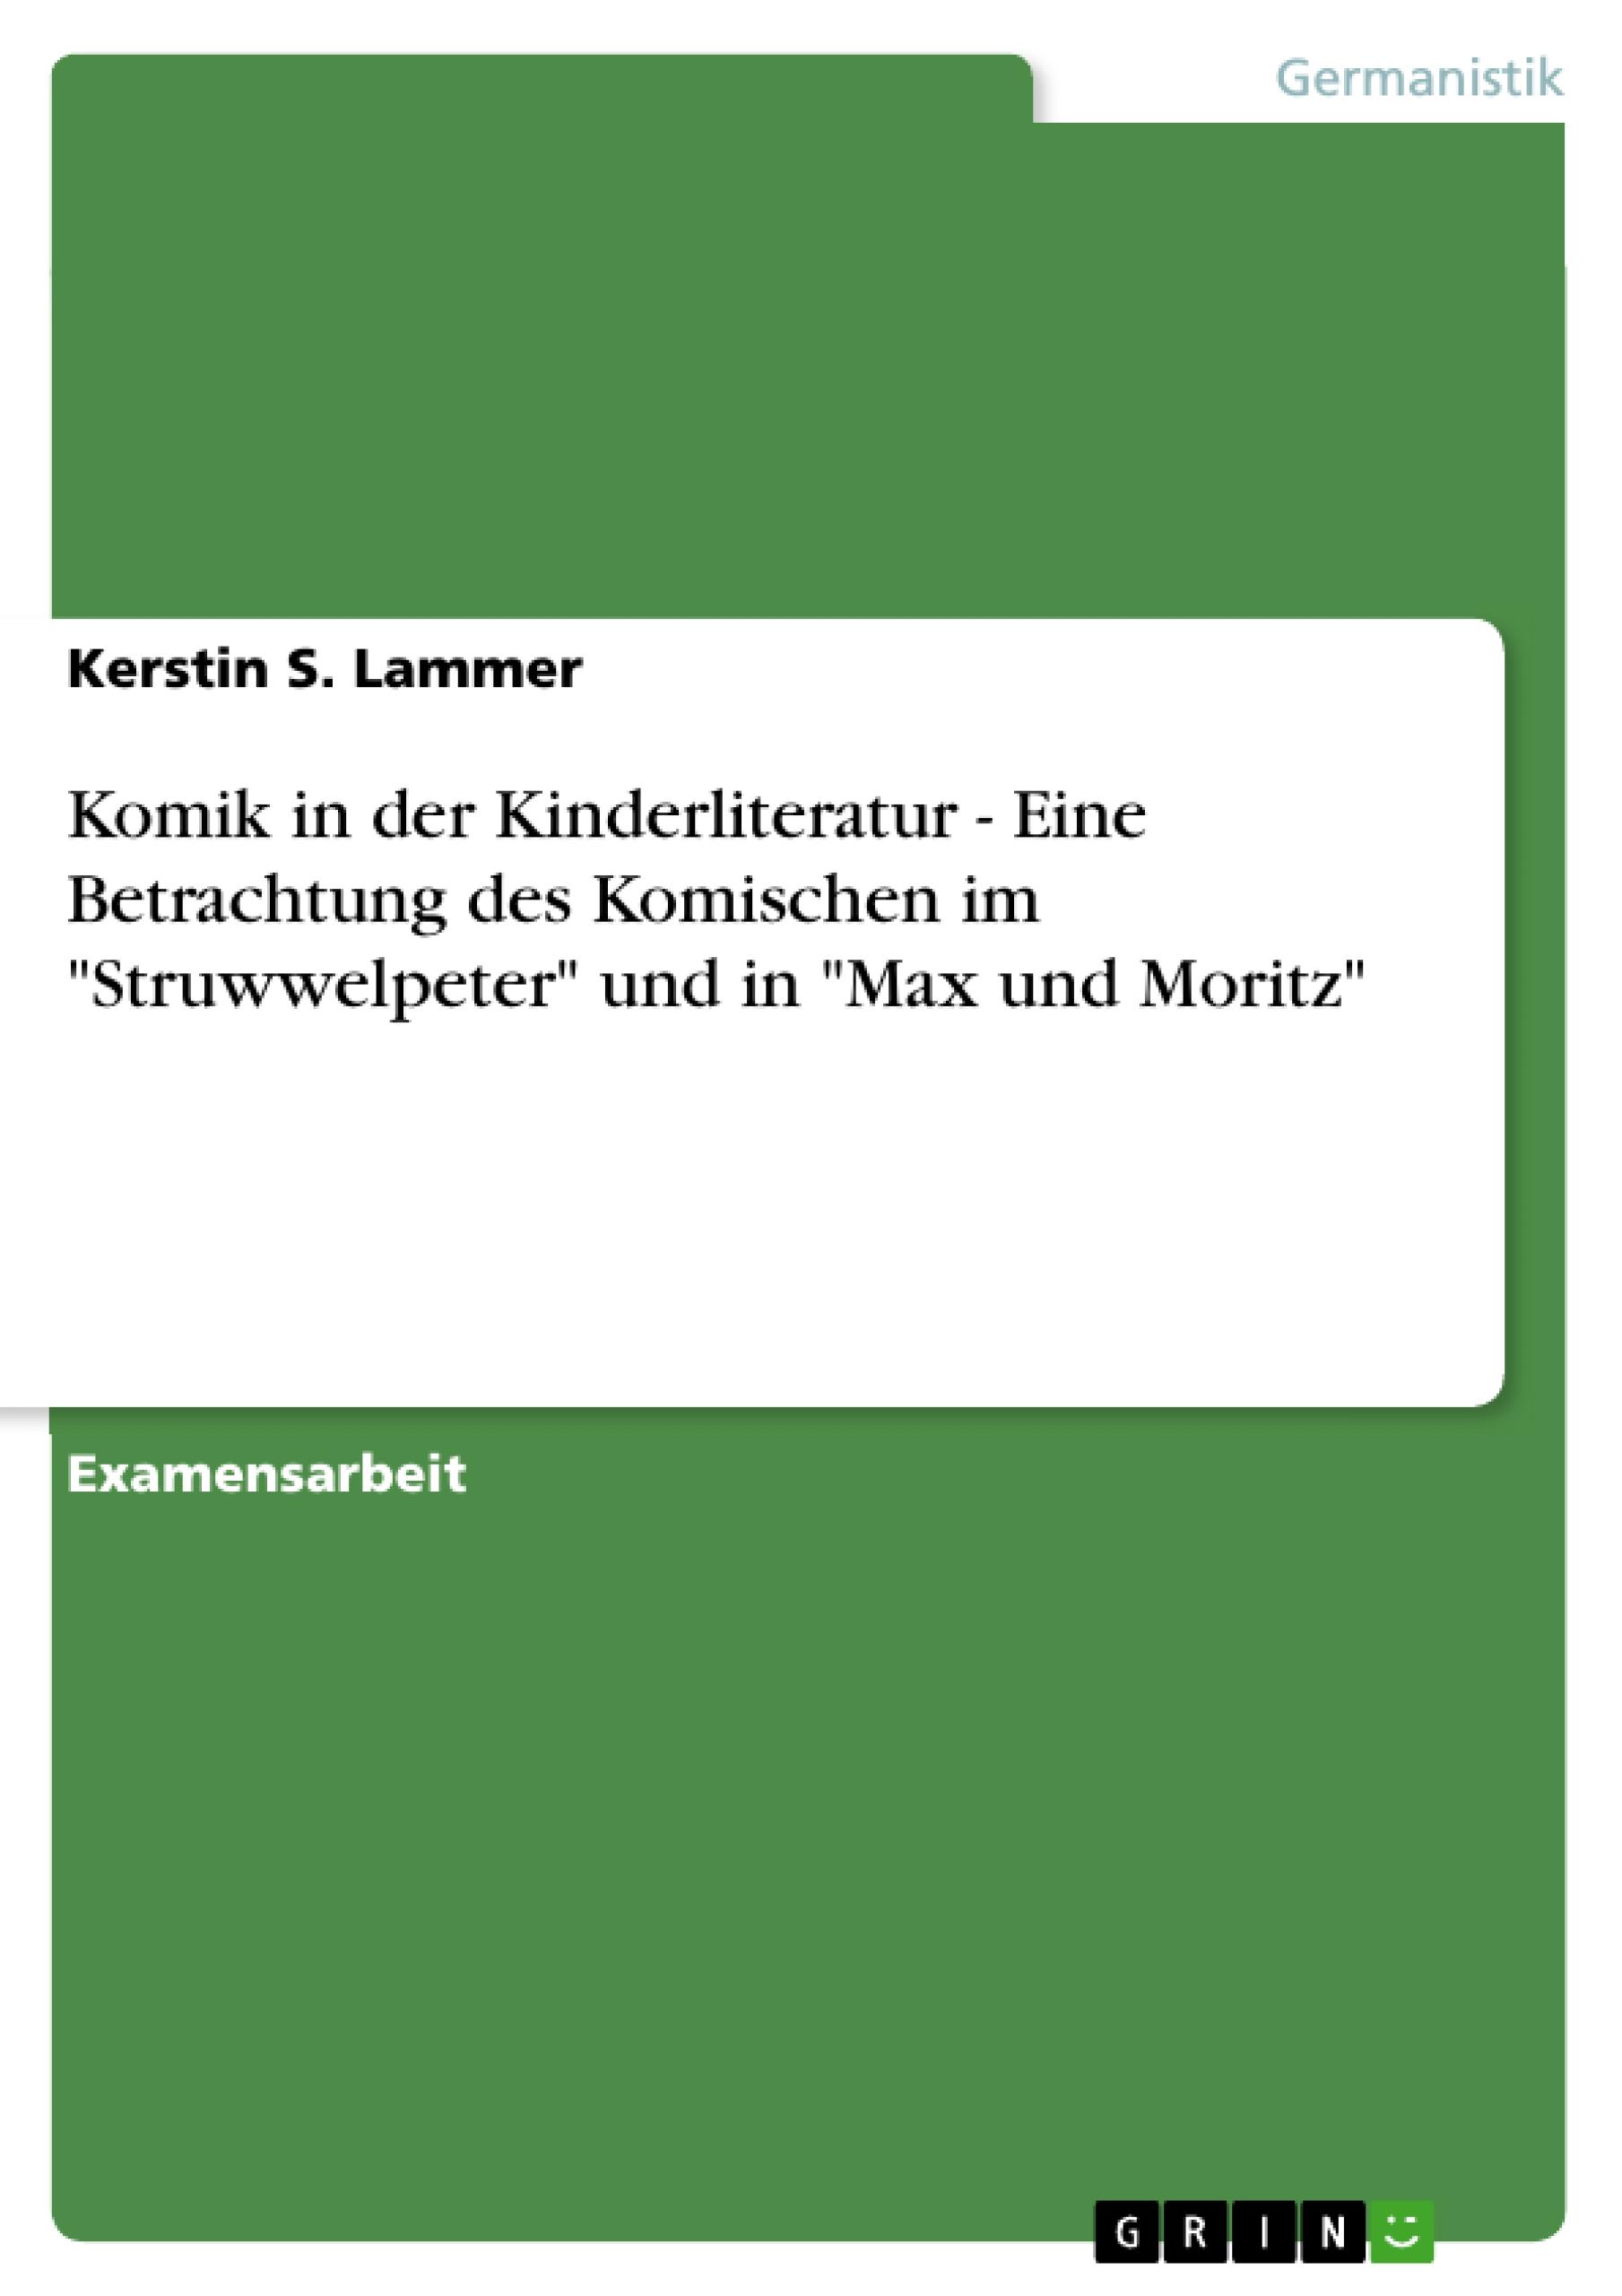 Komik in der Kinderliteratur - Eine Betrachtung des Komischen im  Struwwelpeter  und in  Max und Moritz - Lammer, Kerstin S.